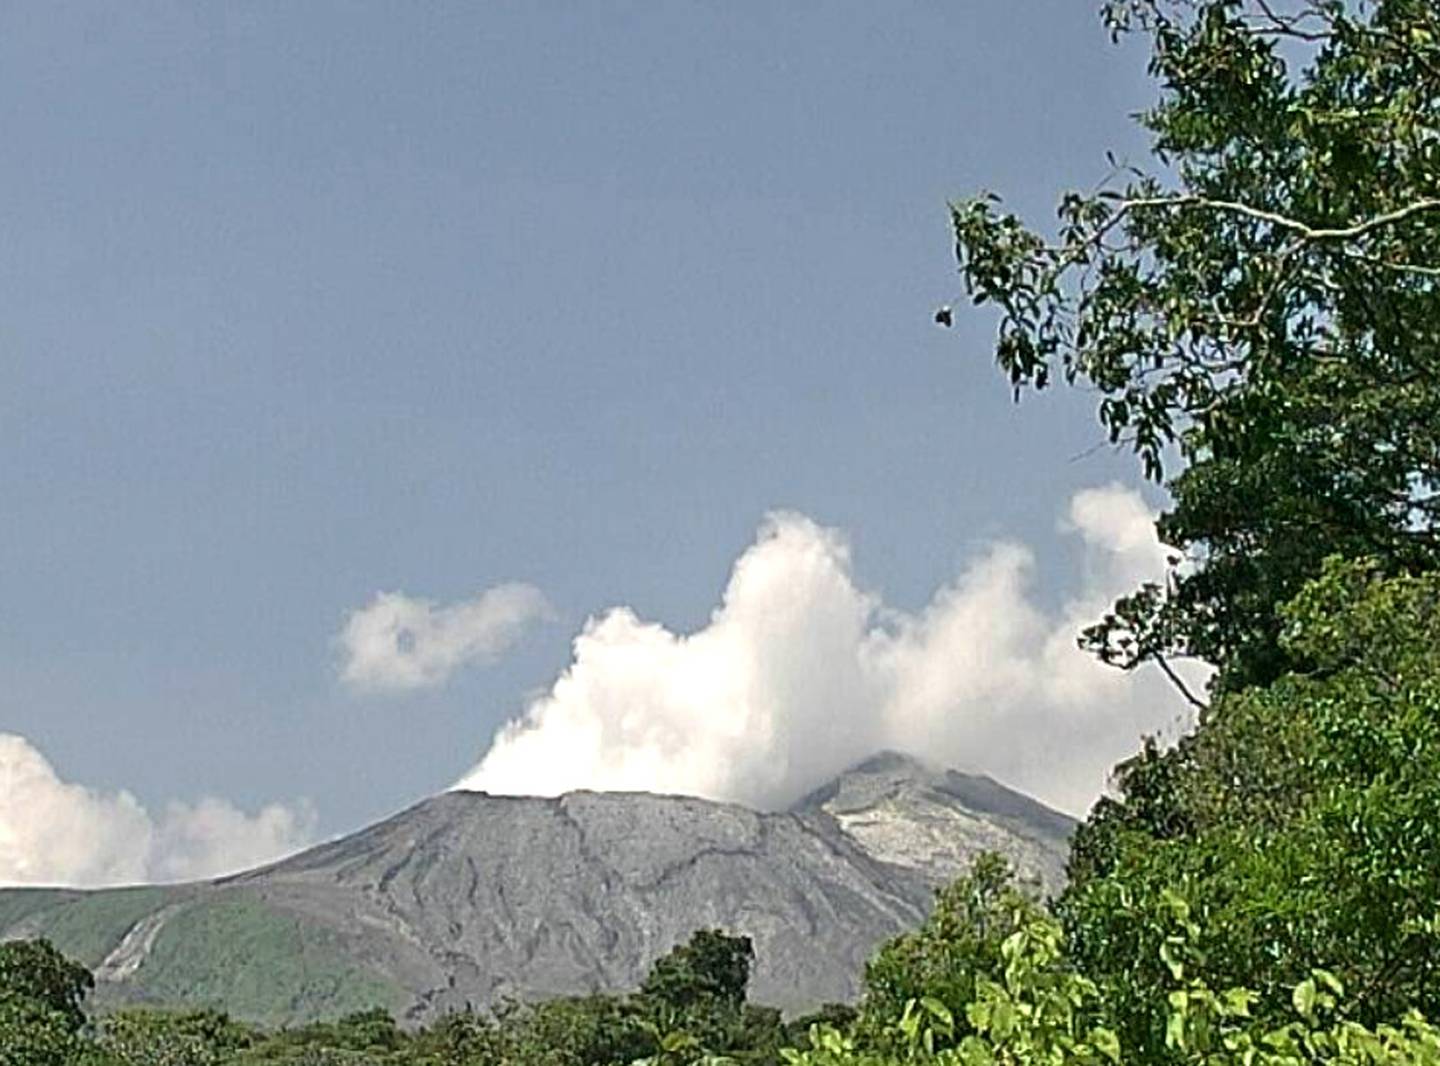 Los signos actuales del volcán revelan influencia de magna a poca profundidad, lo que podría generar una erupción fuerte en cualquier momento. Foto: Ovsicori.